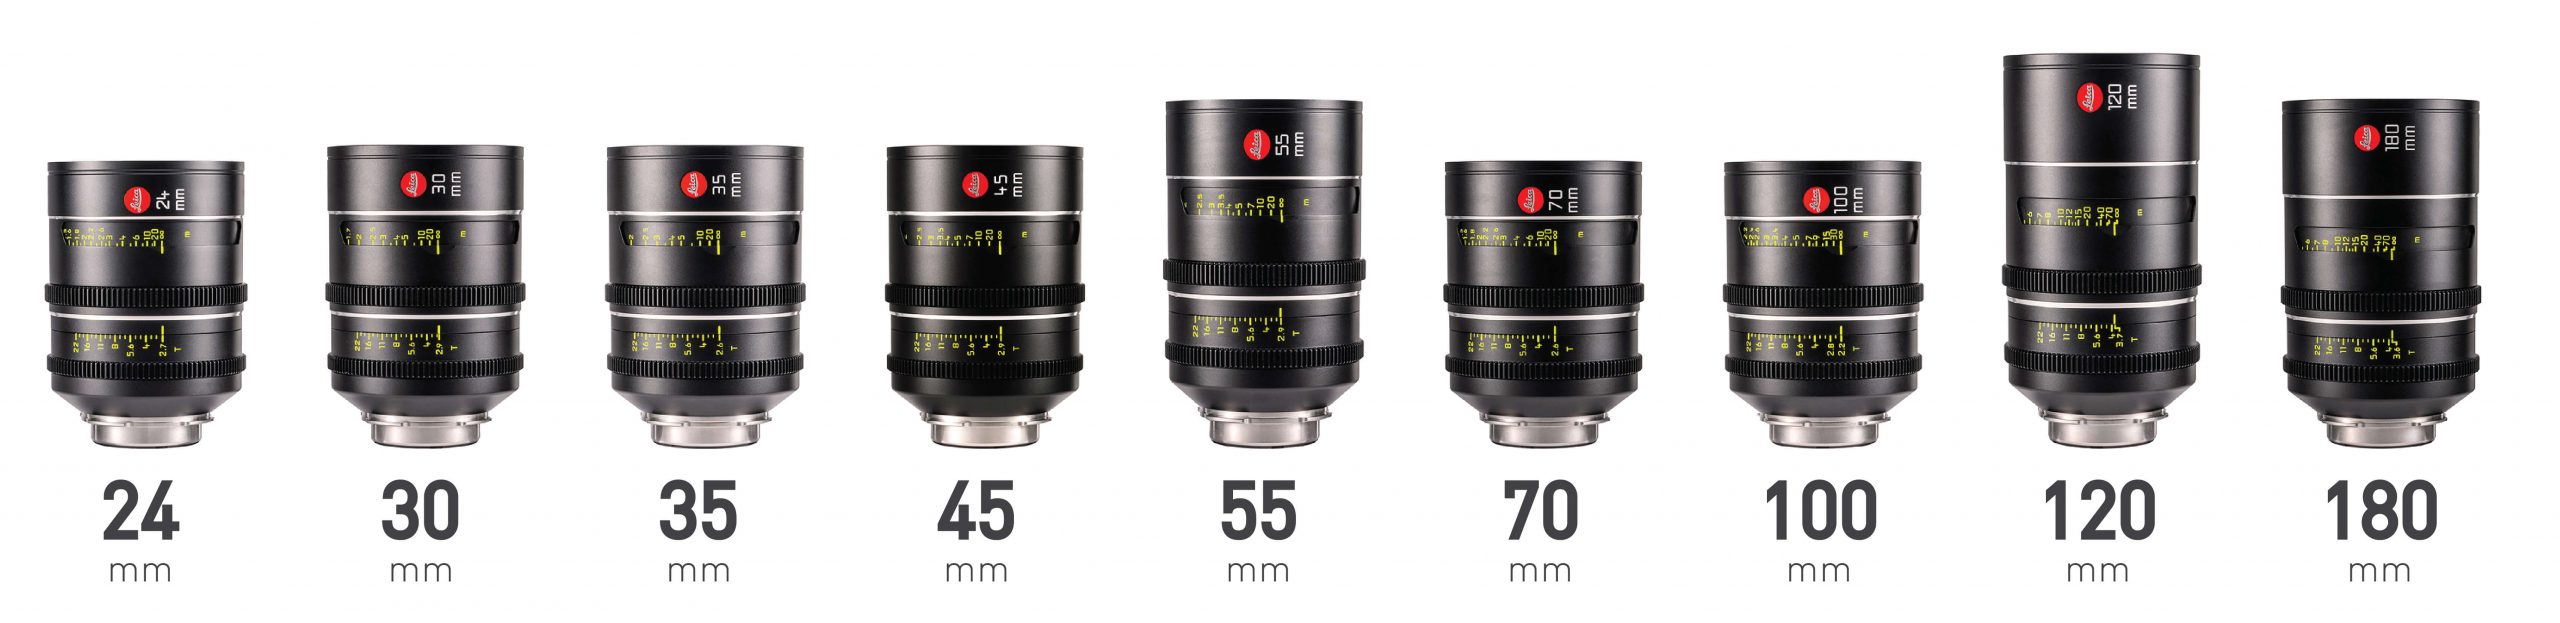 Leica Leitz Thalia large format lenses